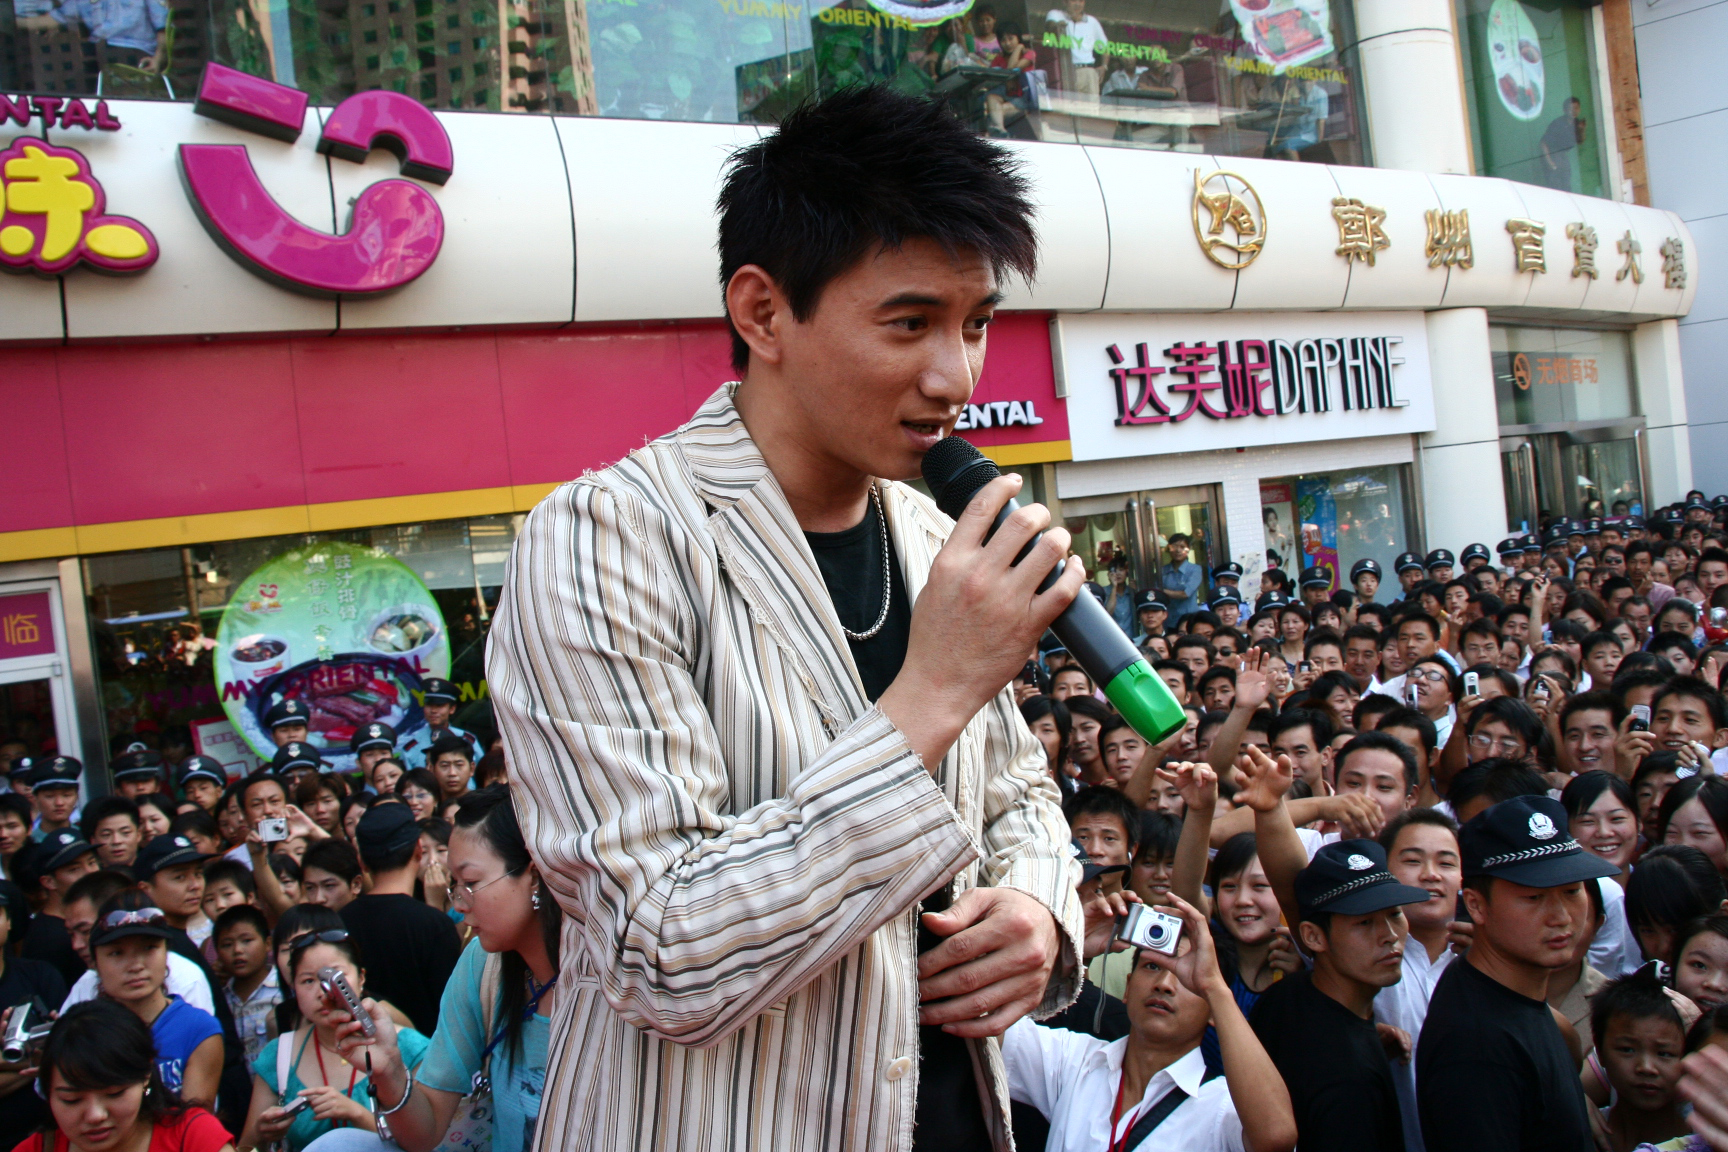 这是10年前吴奇隆在郑州唱歌的样子!